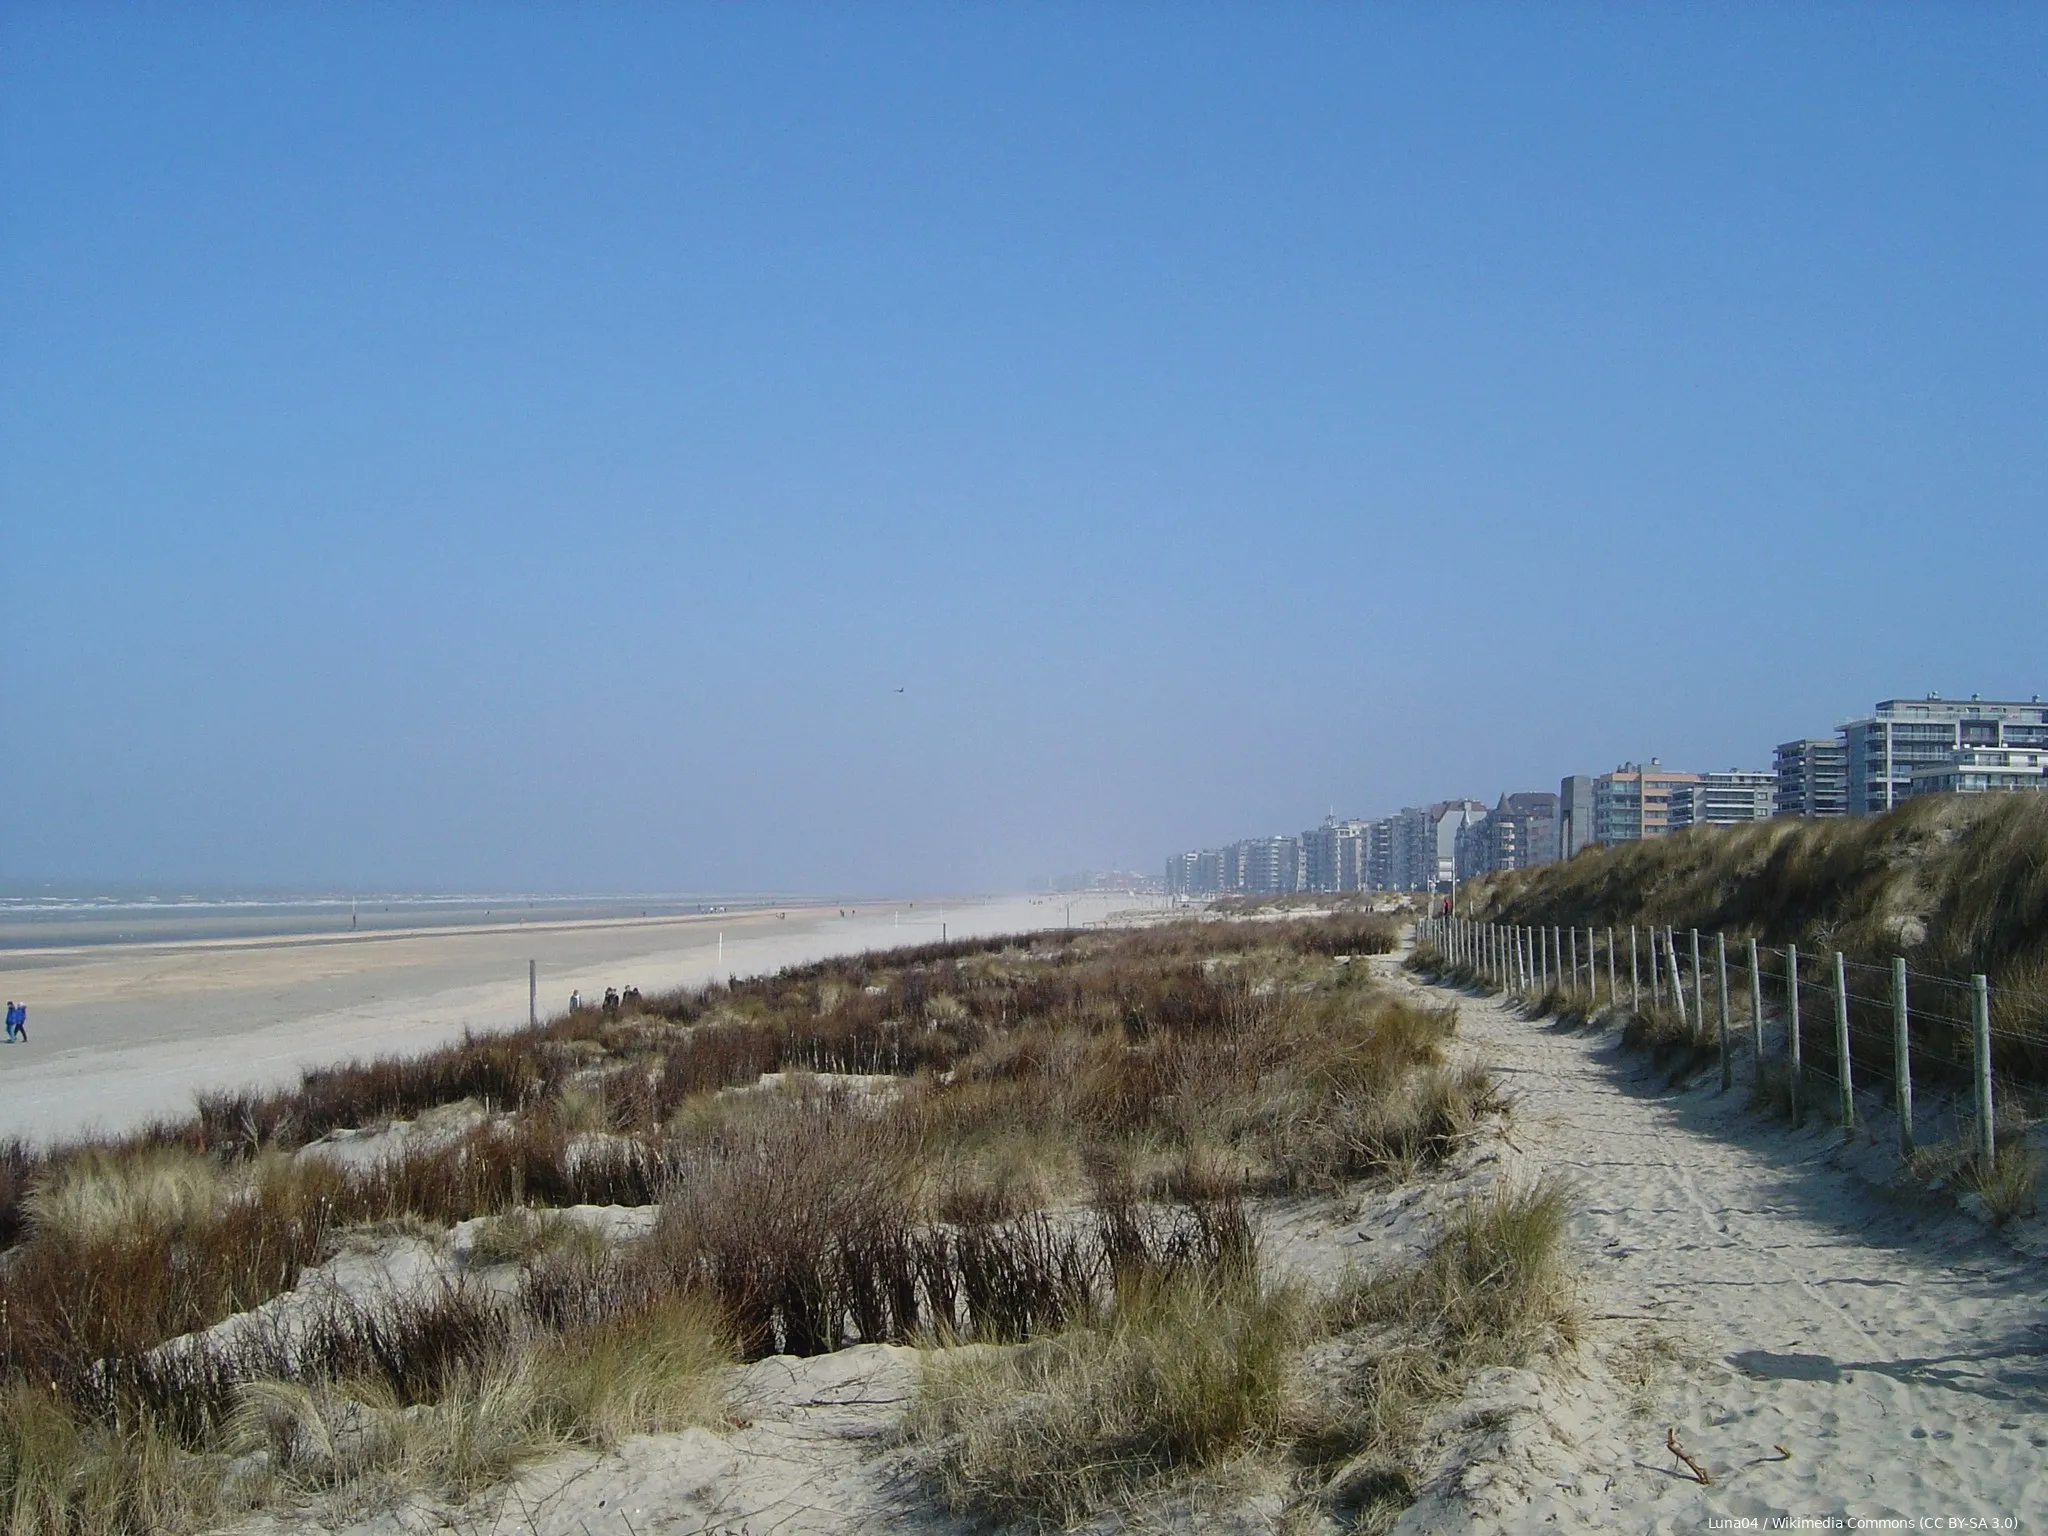 2048px de panne dunes et plage